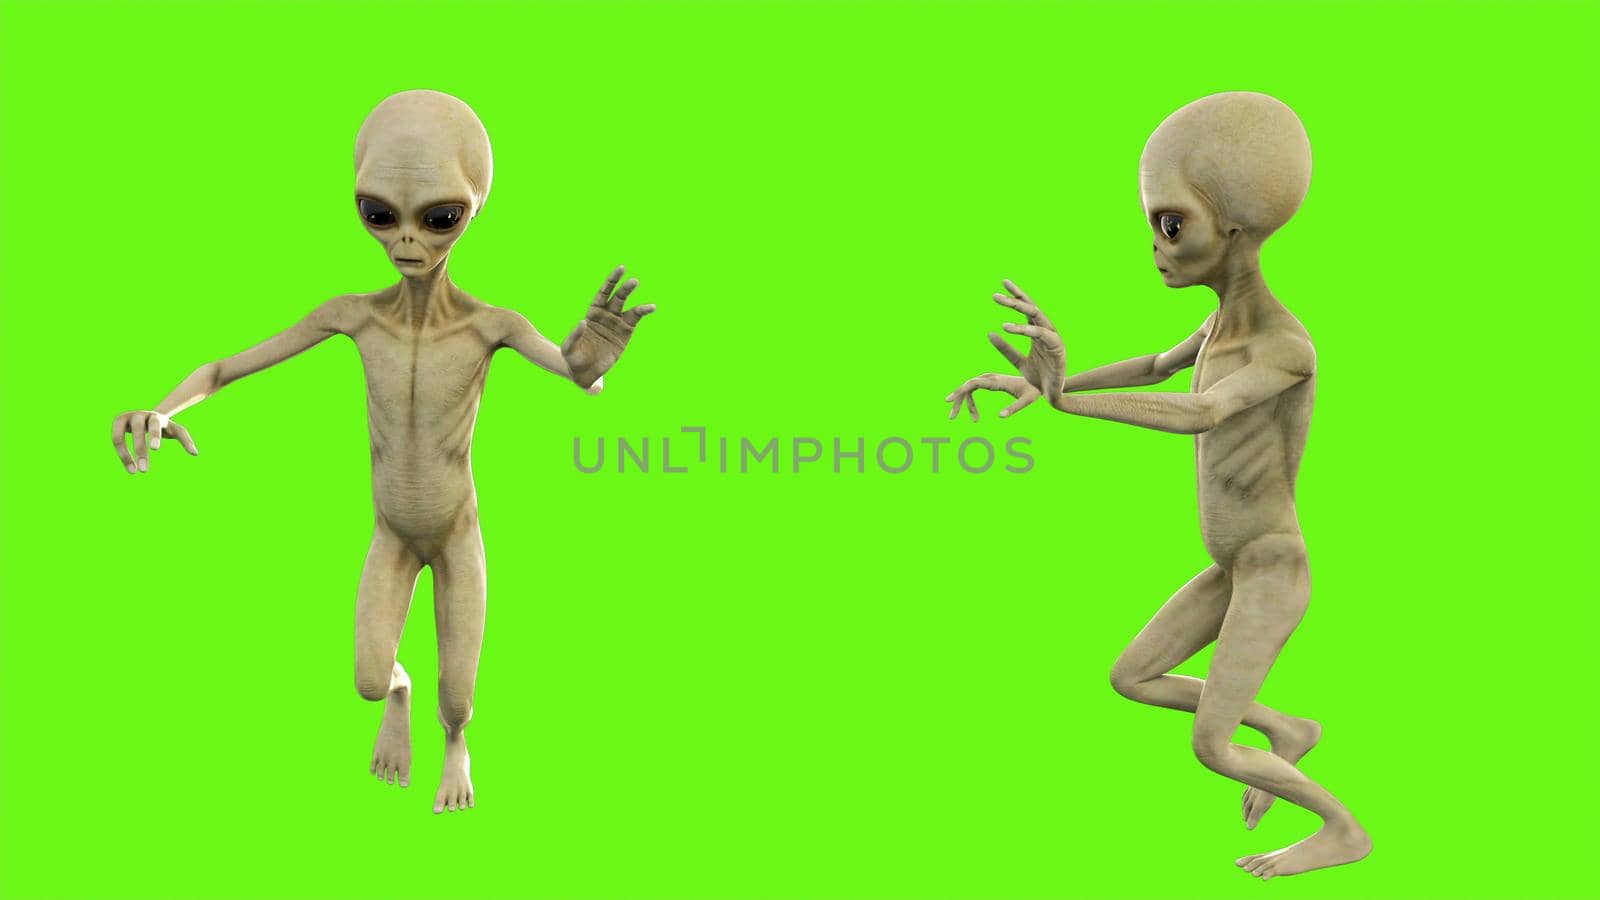 Alien runs away in fright. 3D rendering by designprojects